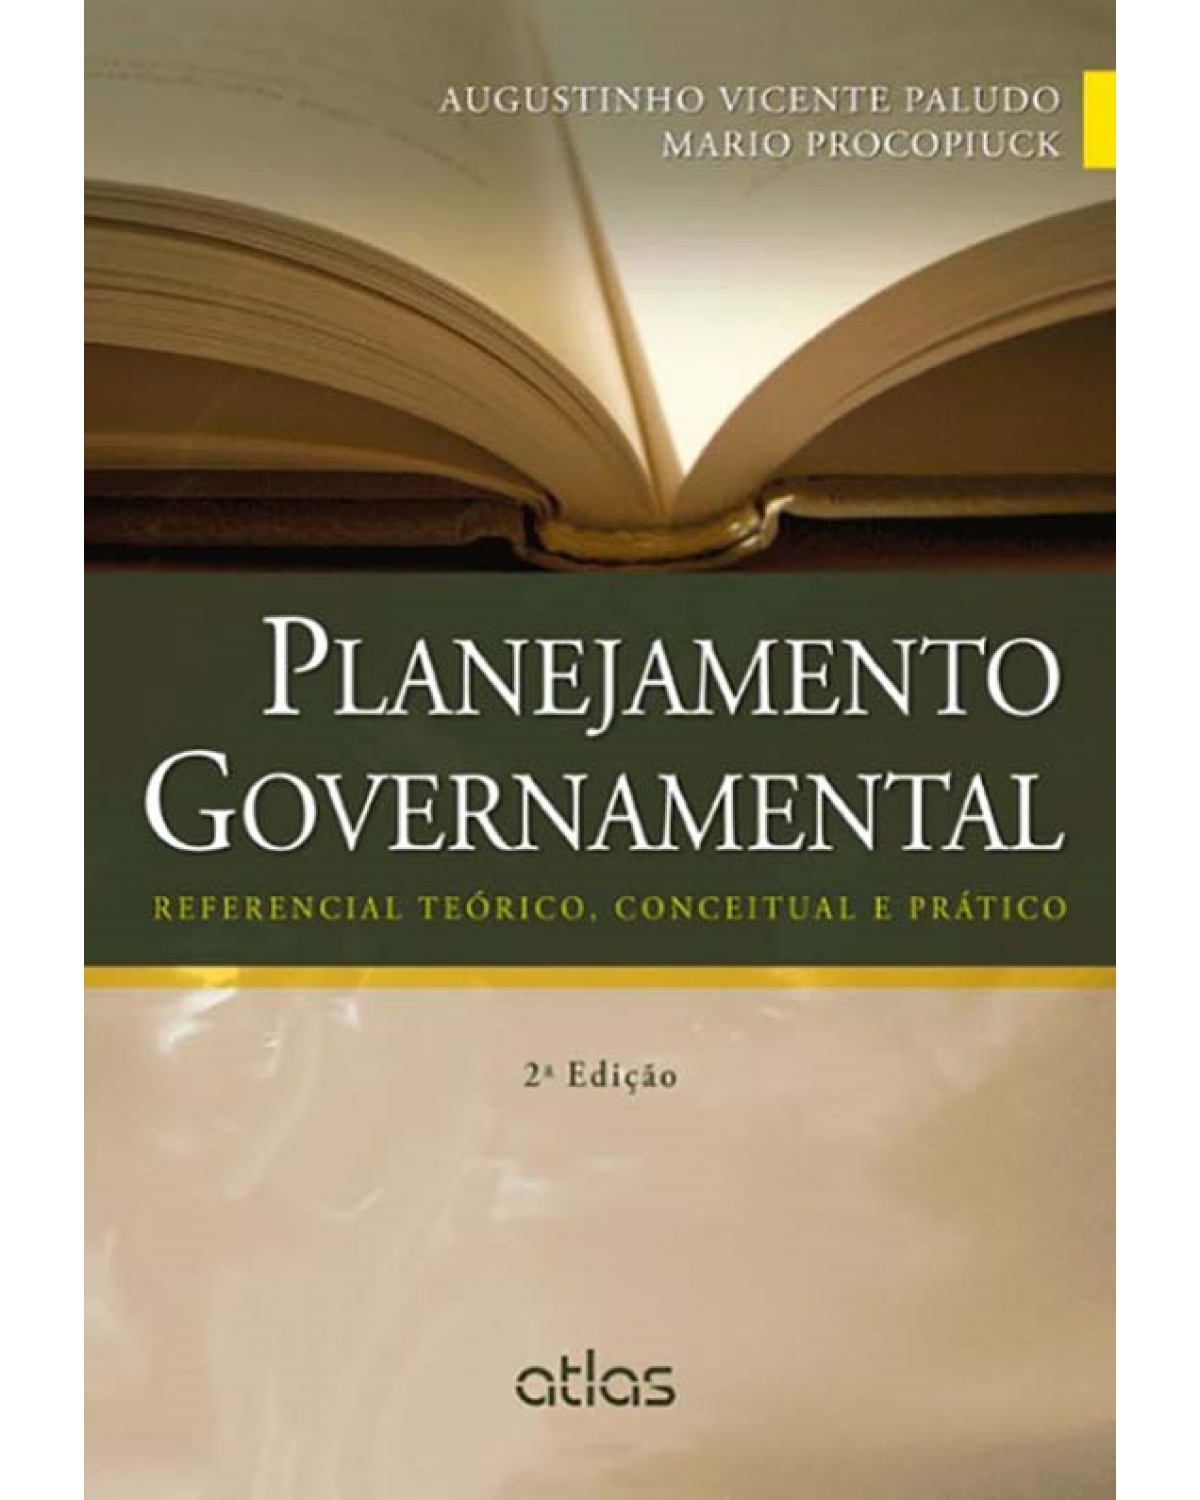 Planejamento governamental - Referencial teórico, conceitual e prático - 2ª Edição | 2014